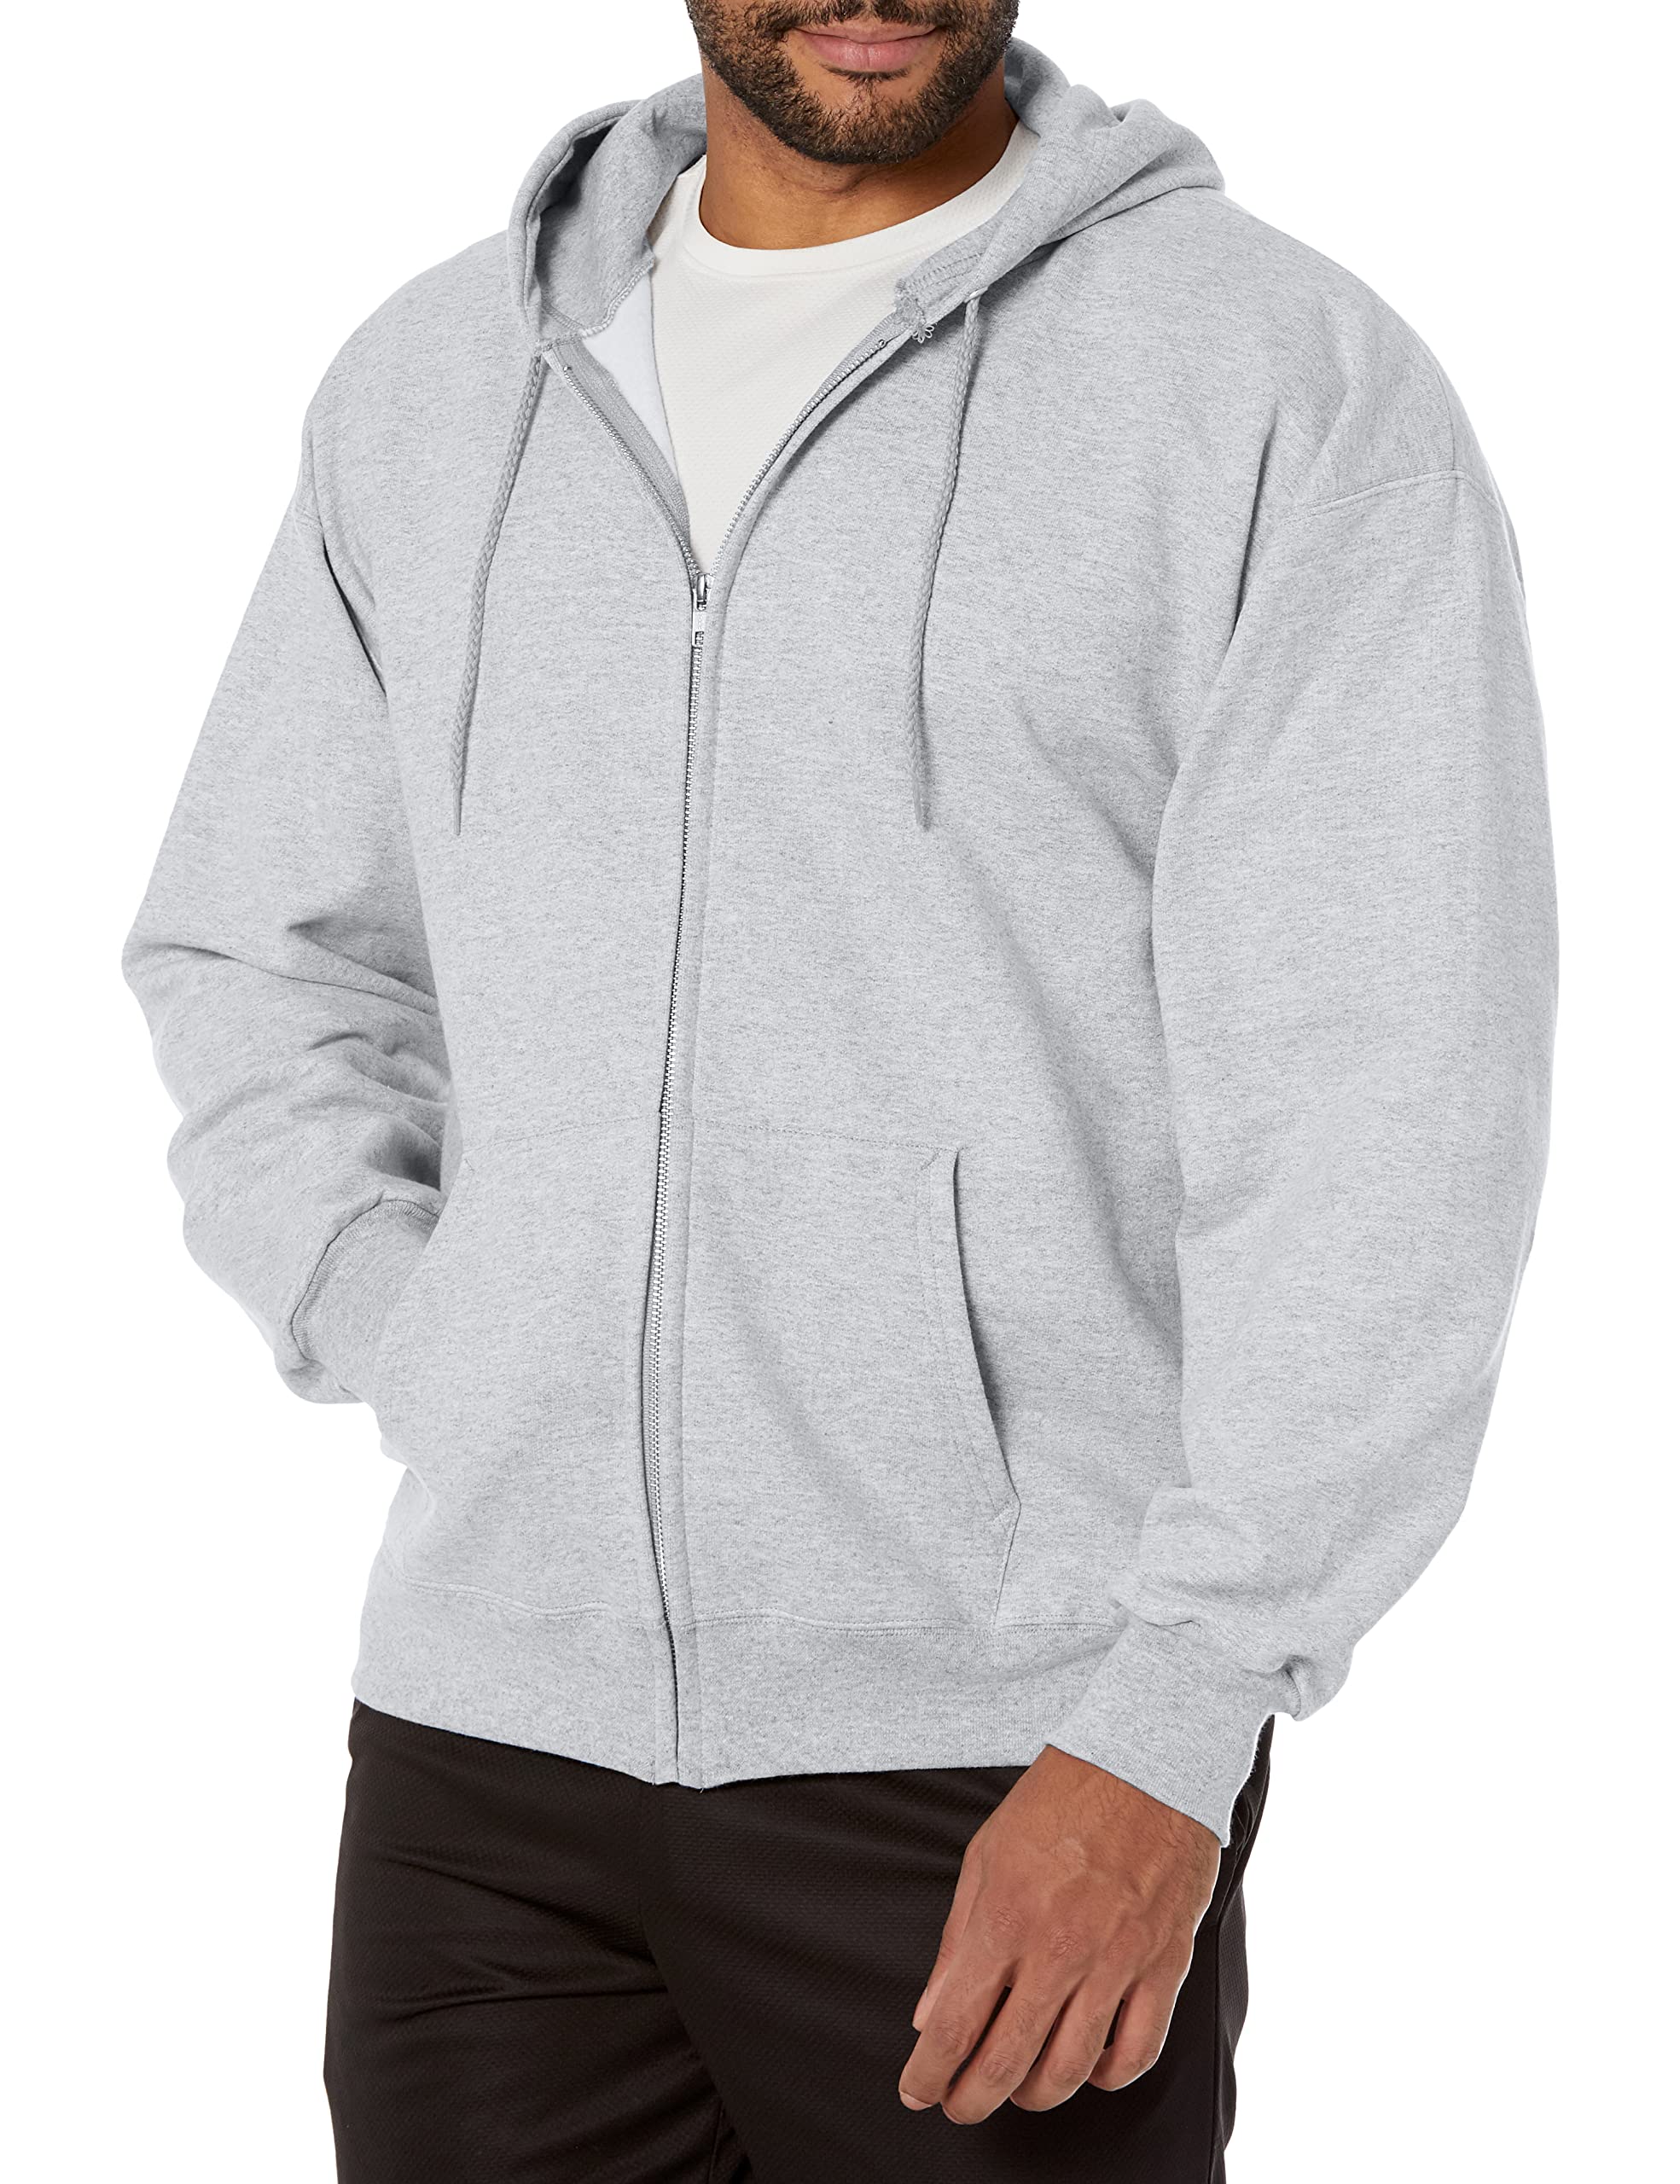 Hanes Ultimate Full-Zip Hoodie, Men's Hooded Fleece Sweatshirt with Zipper